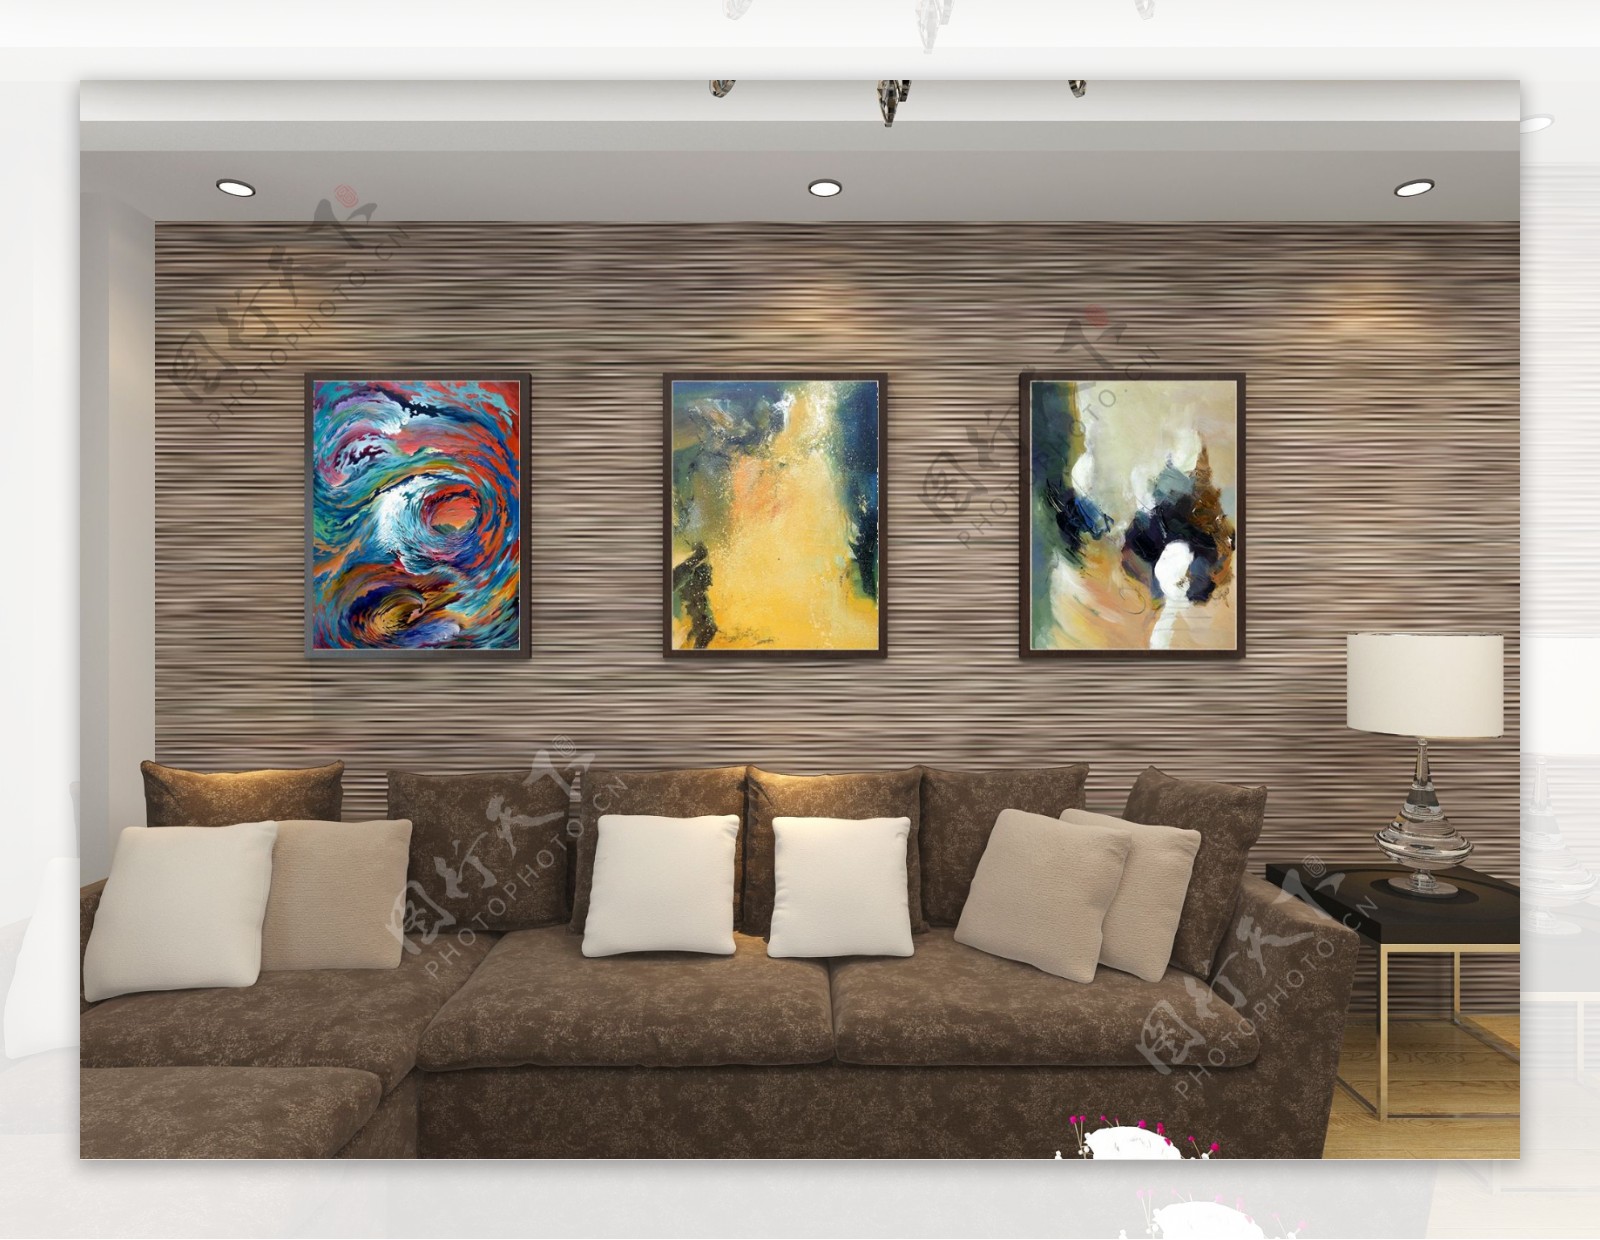 客厅装饰抽象三联画